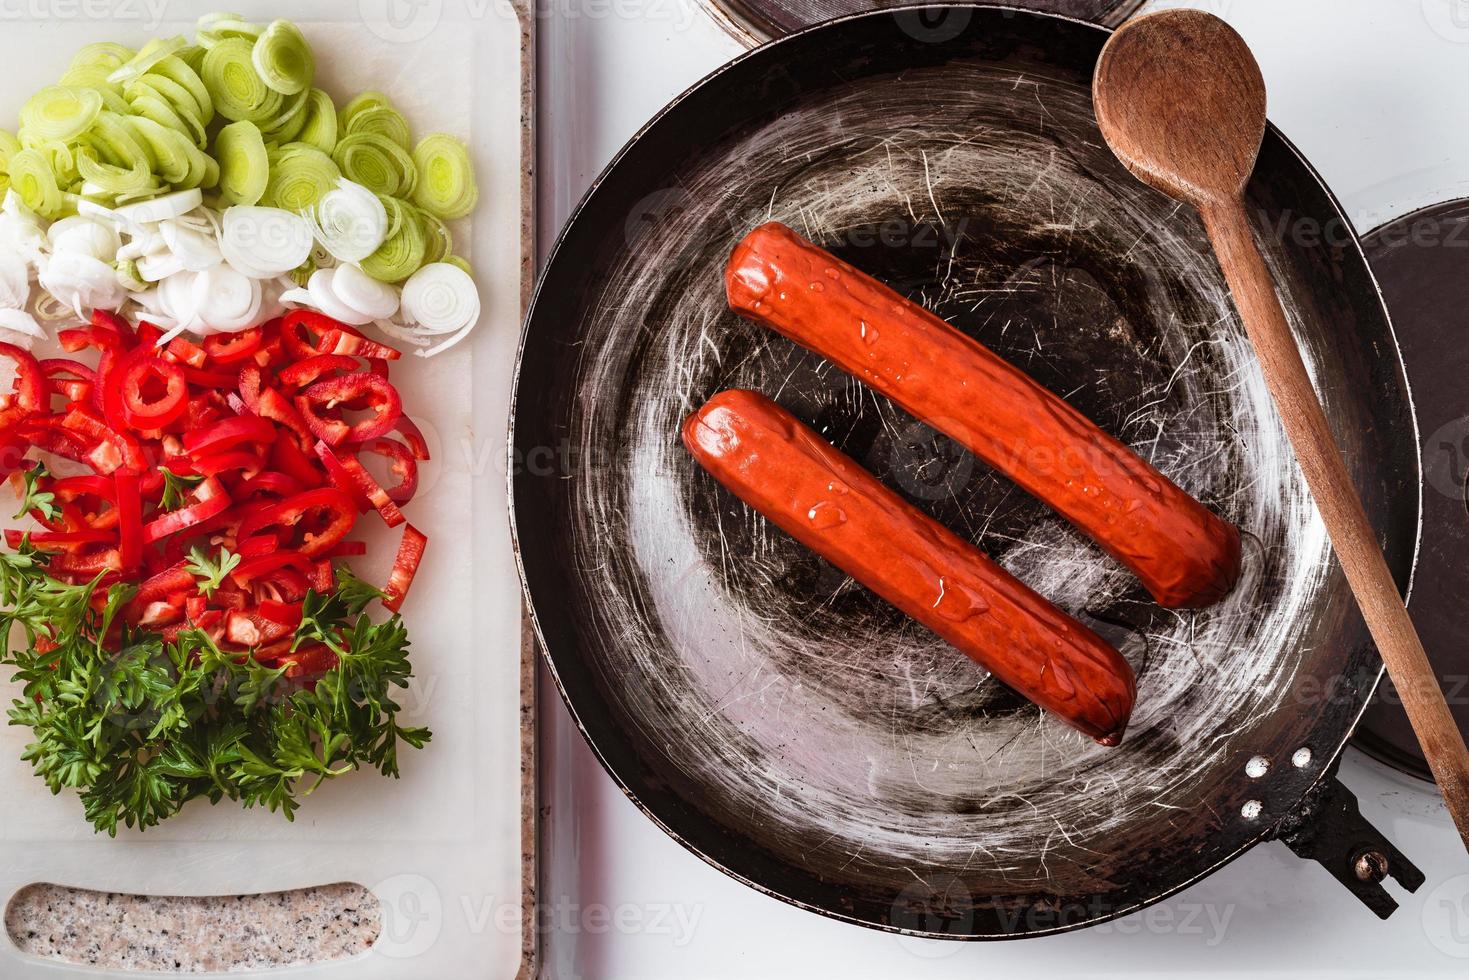 salsiccia fritta in padella rustica, mix di verdure fresche, peperoni, prezzemolo e porro su tavola da cucina pronta per essere fritta foto